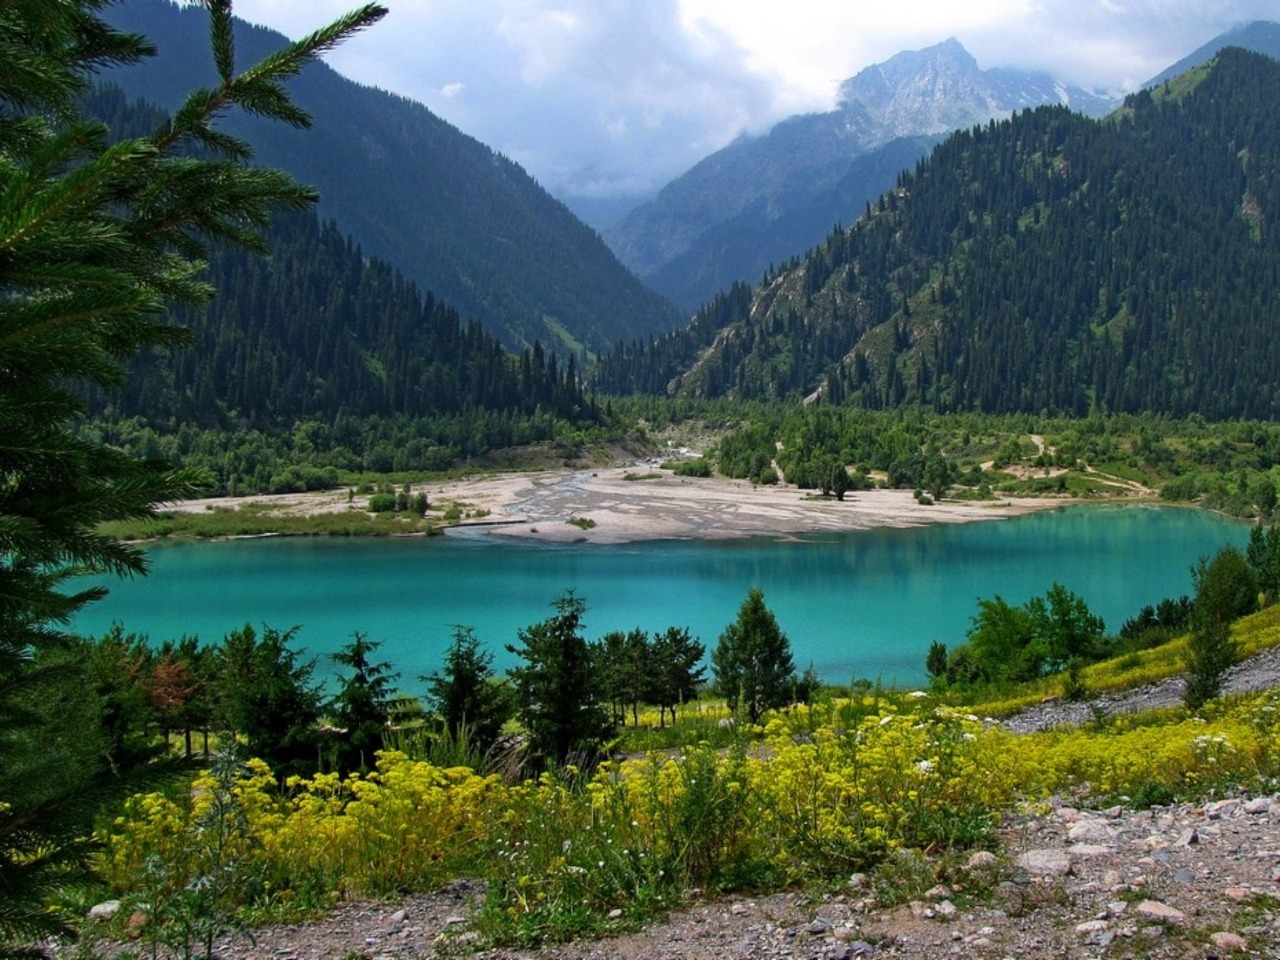 Озеро Иссык и Медвежий водопад+форелевое хозяйство | Цена 25000₽, отзывы, описание экскурсии